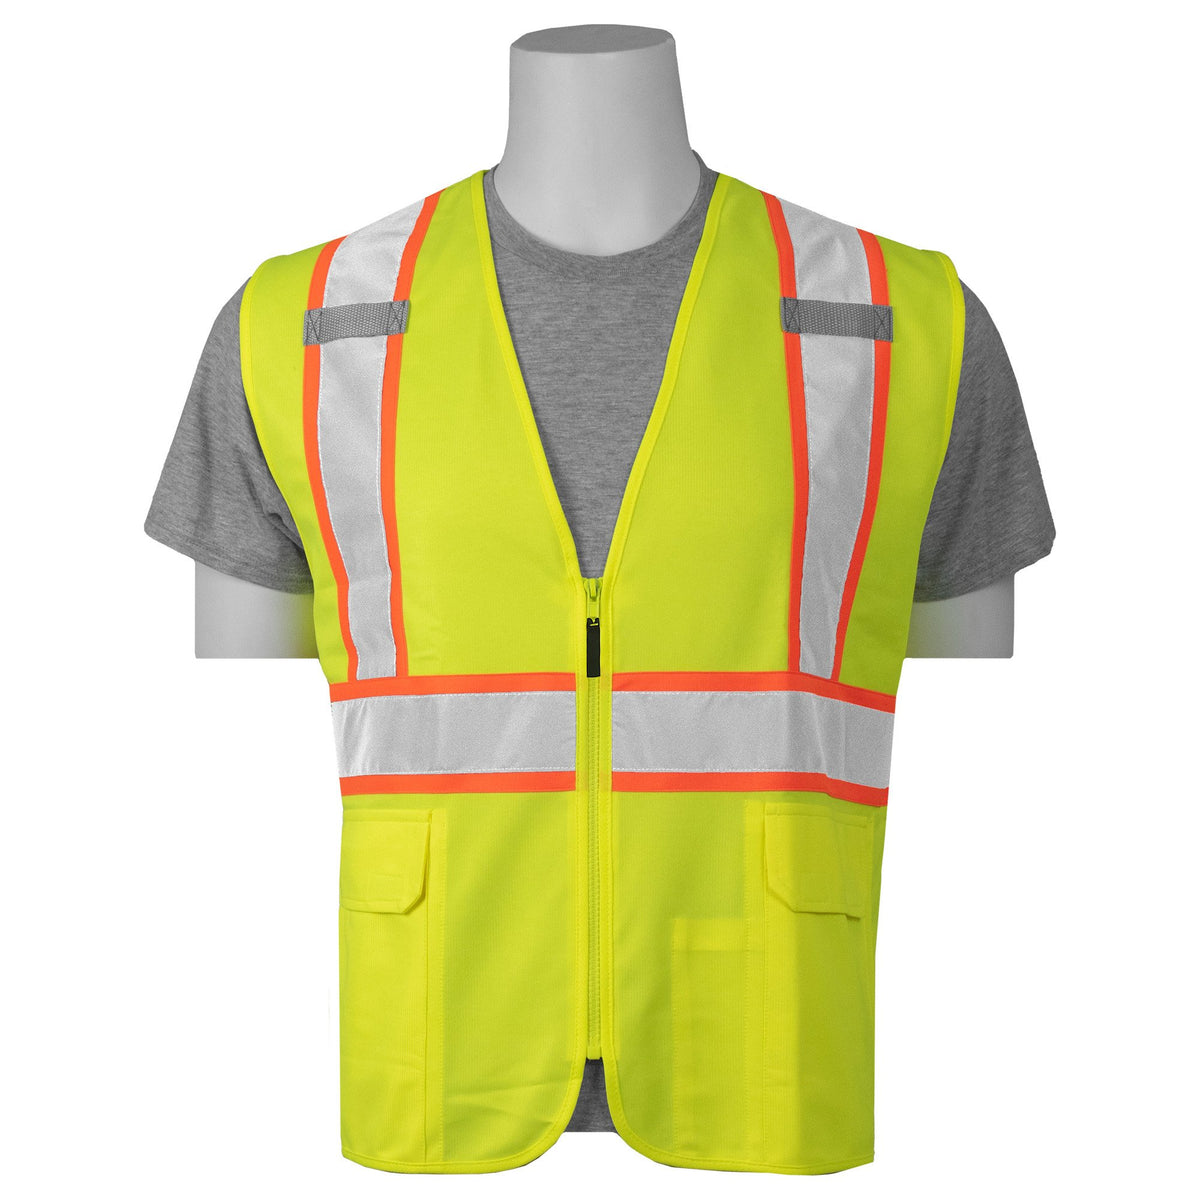 S385SC CL2 Surveyor&#39;s Safety Vest Lime 1PC